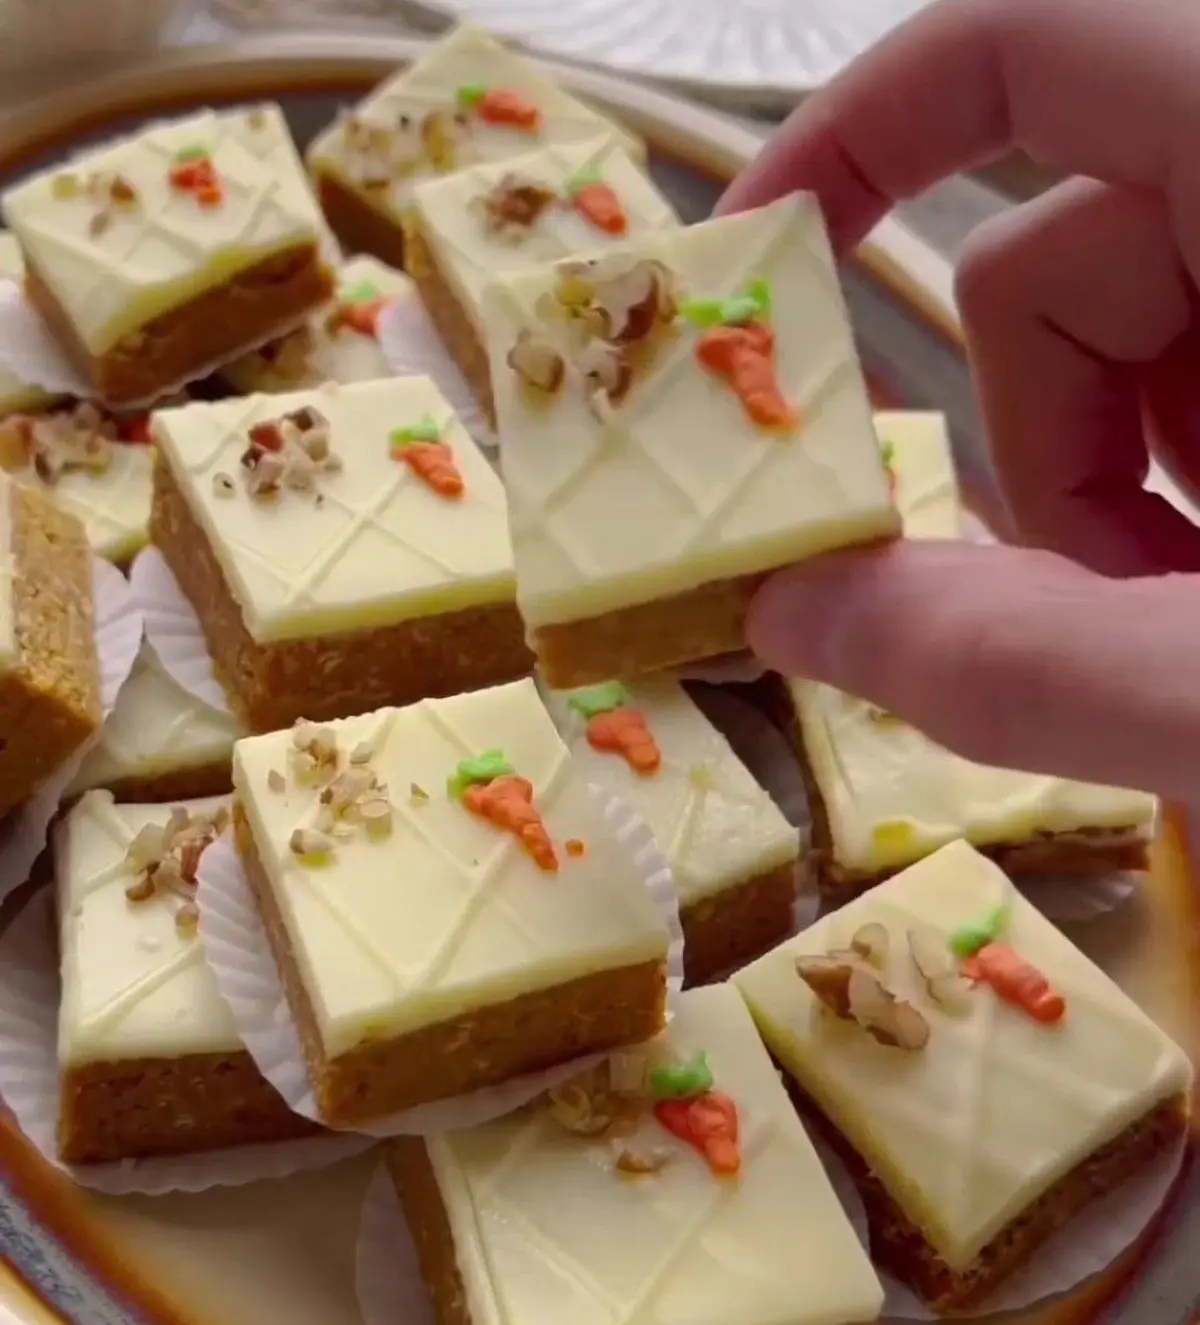 کیک میکس هویج و بیسکویت یک دسر بینظیر و متفاوت | طرز تهیه کیک میکس هویج و بیسکویت +ویدئو